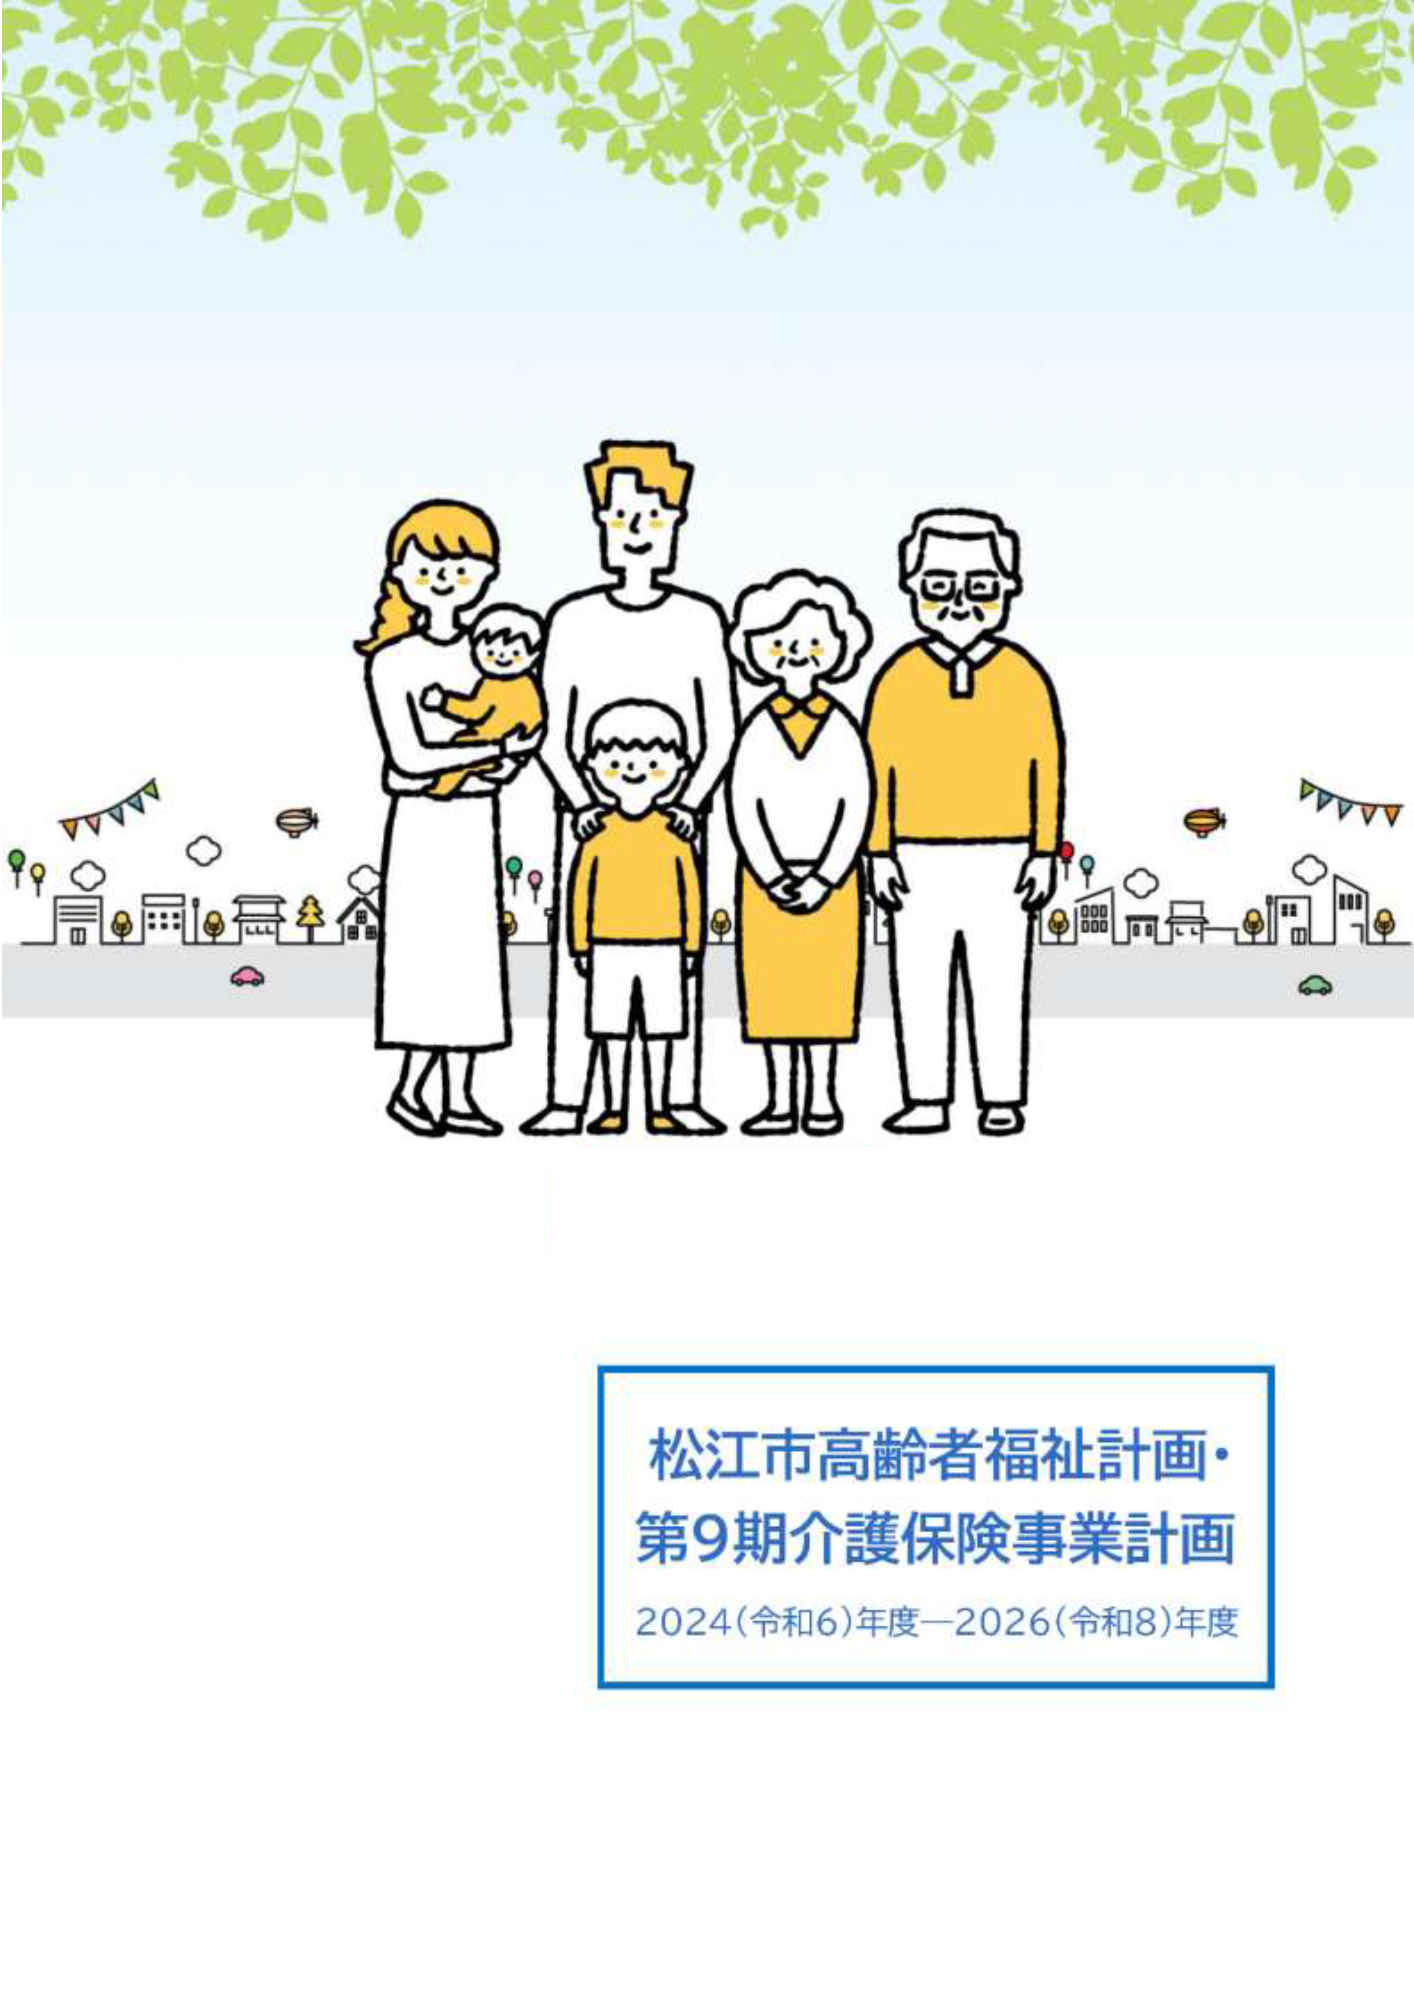 松江市高齢者福祉計画･第9期介護保険事業計画書表紙